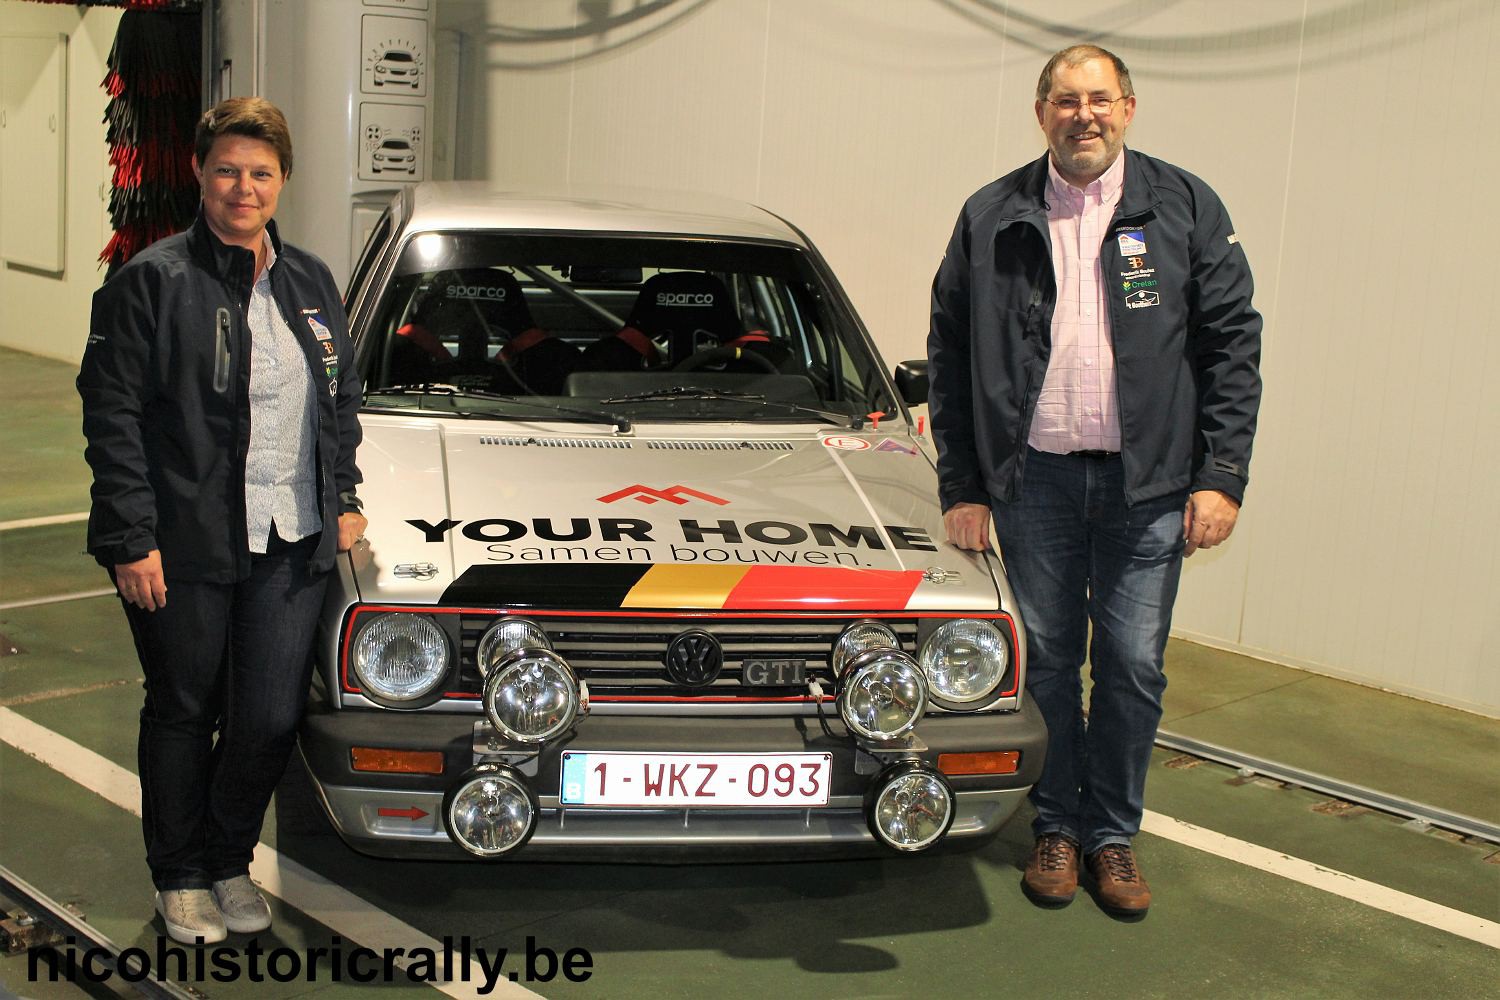 Philippe Vallaeys en Caroline D’Haese stellen hun nieuwe wagen voor in Kortrijk !